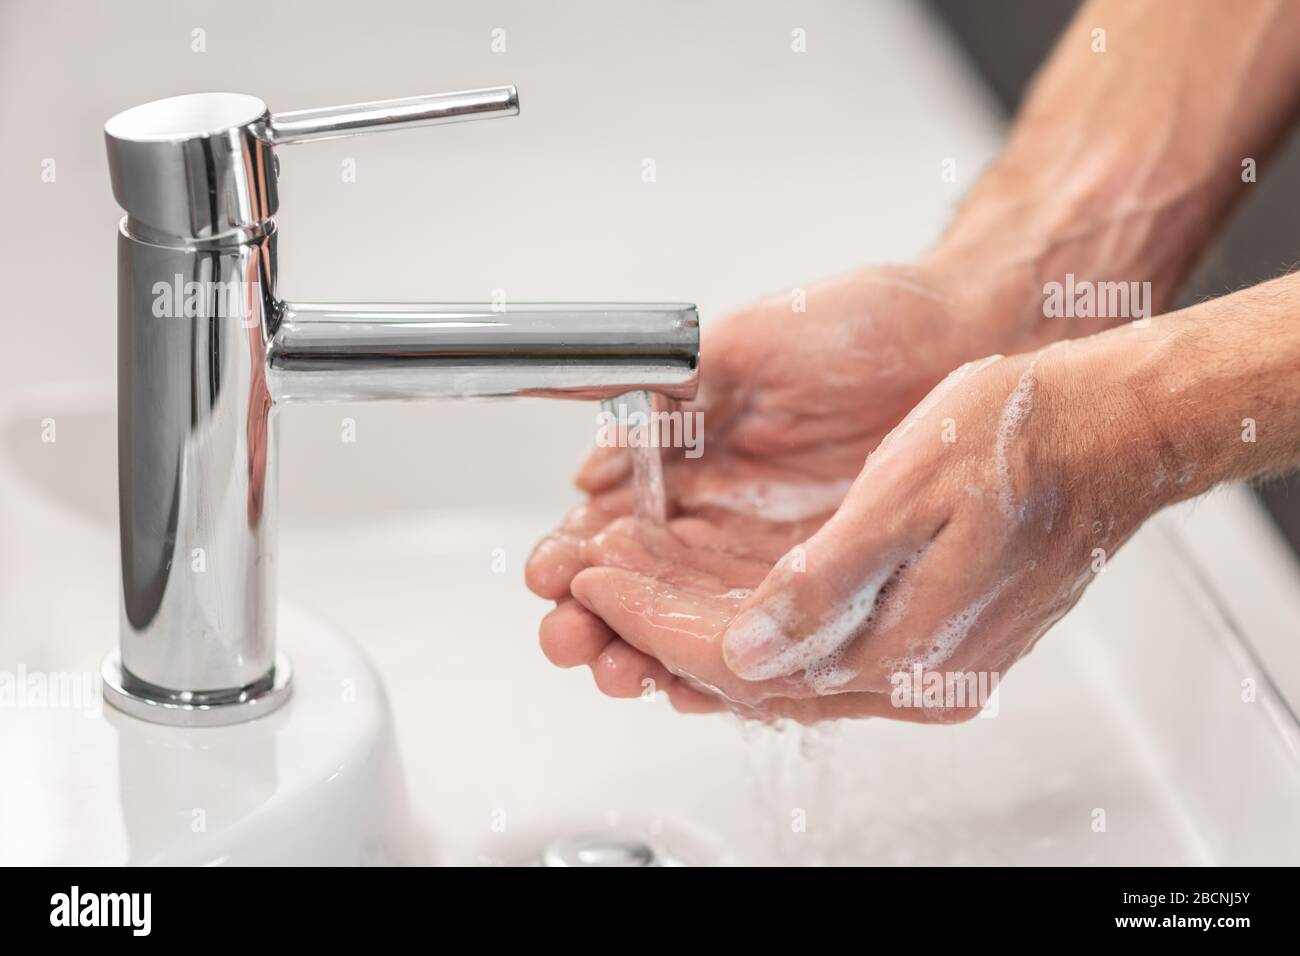 Lavage des mains frottant avec un savon pour la prévention du virus corona, hygiène pour arrêter la propagation du coronavirus. Banque D'Images